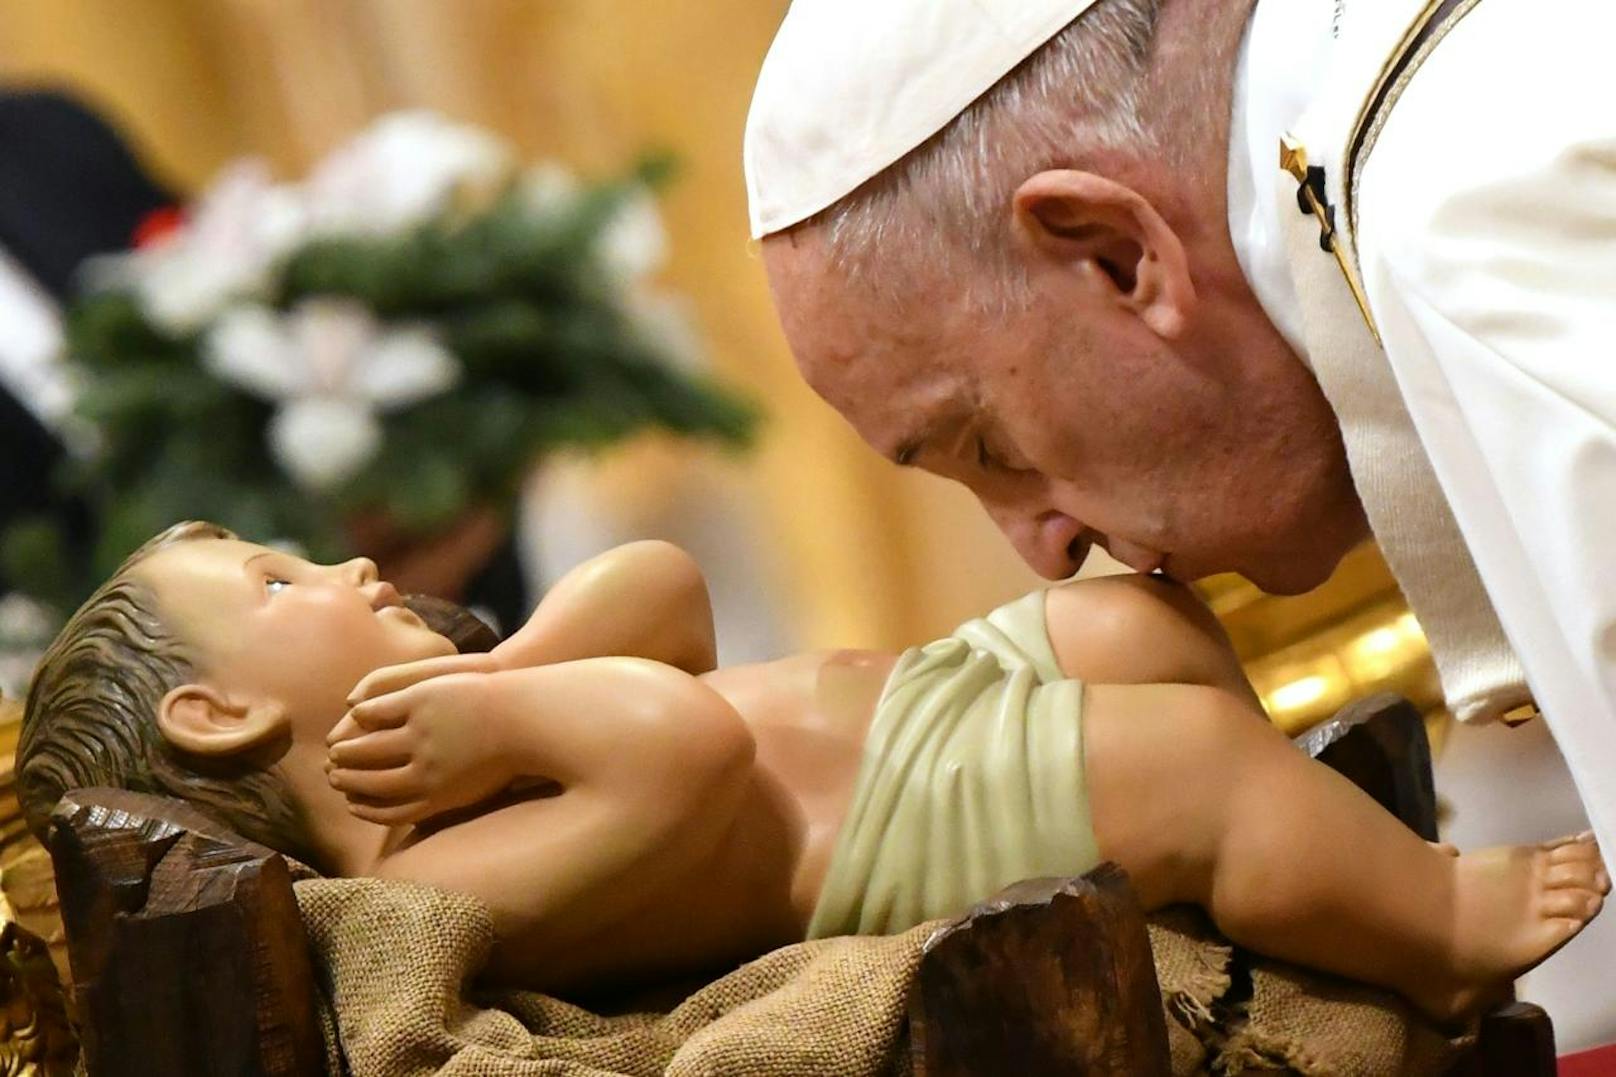 Papst Franziskus hat im Petersdom bereits zum siebten Mal die traditionelle Mitternachtsmesse gefeiert.